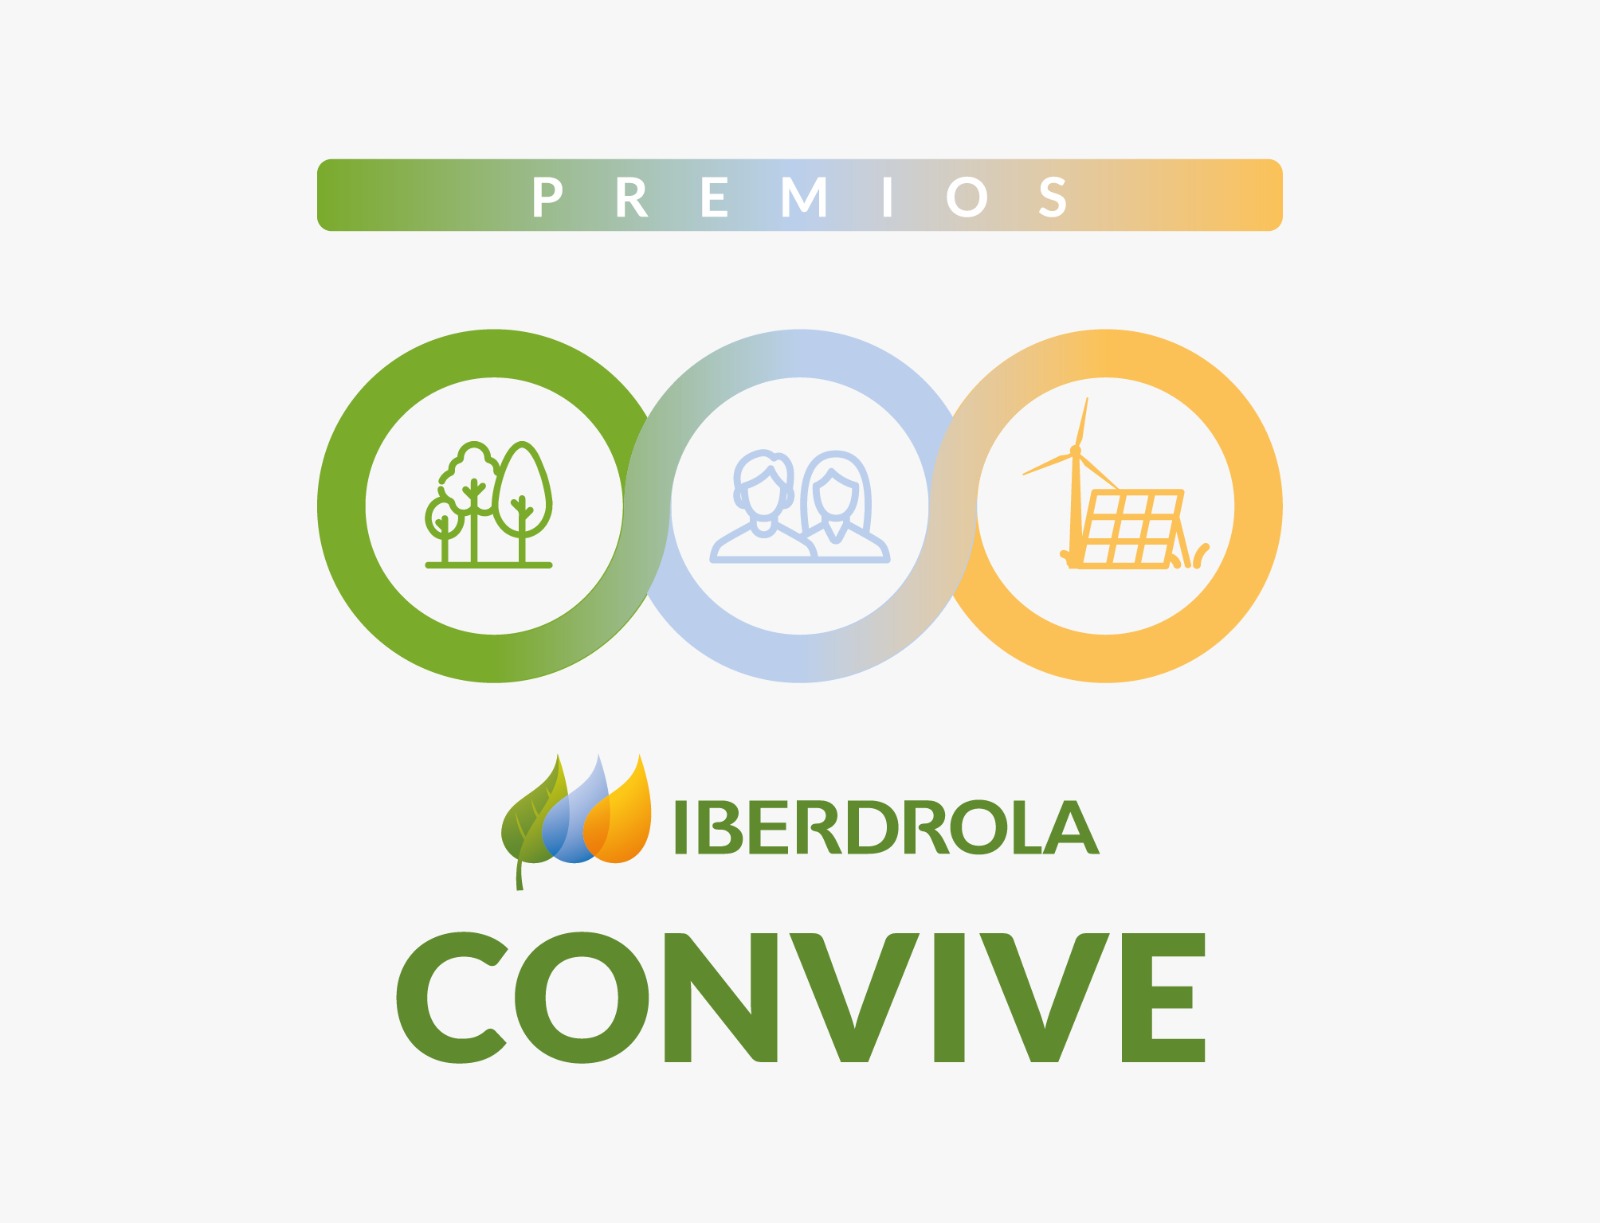 Los “Premios Iberdrola Convive” abren su primera convocatoria